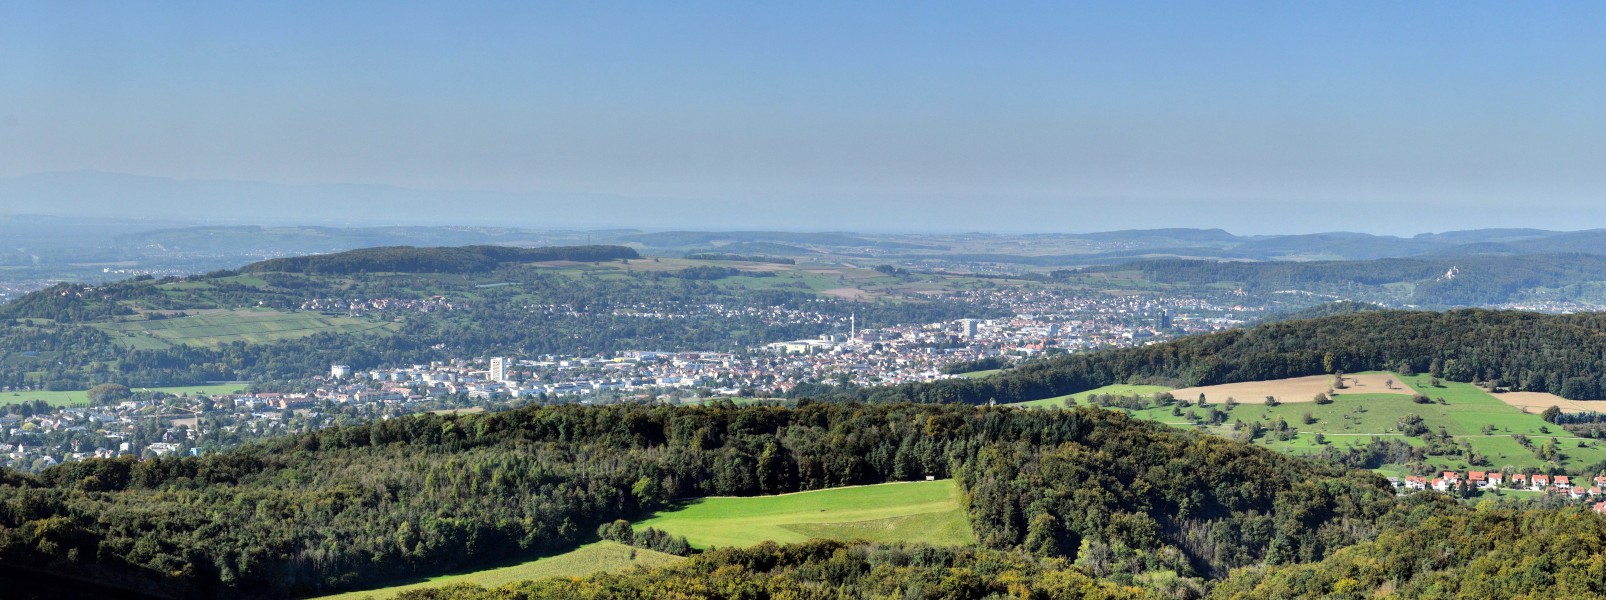 Lörrach - Panorama vom Fernsehturm St. Chrischona